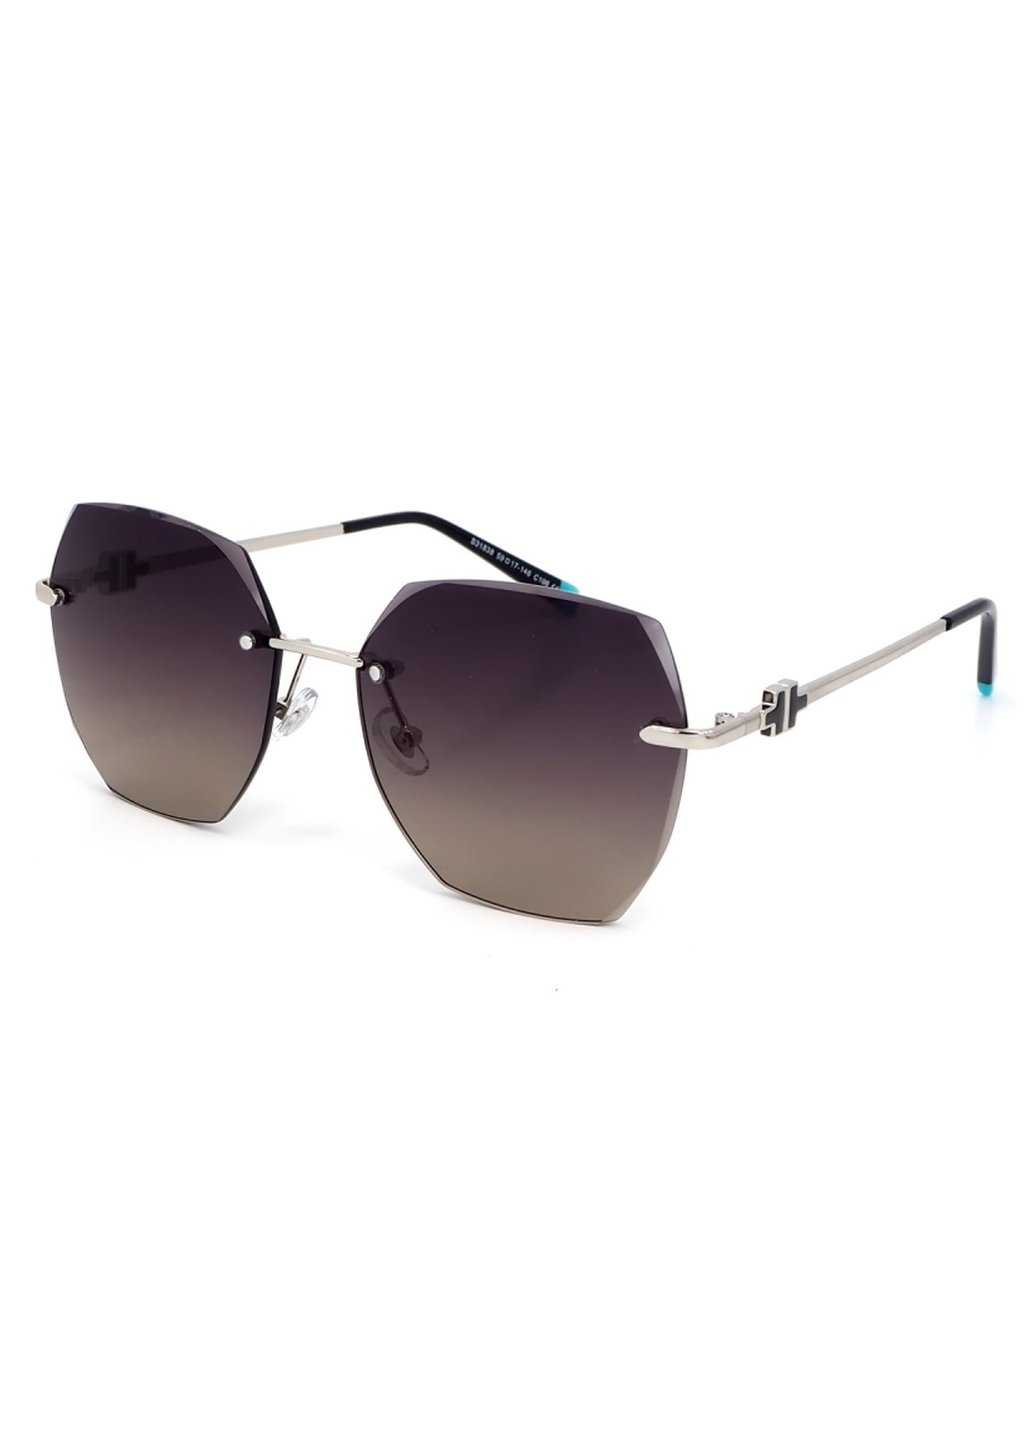 Купить Женские солнцезащитные очки Merlini с поляризацией S31838 117107 - Серый в интернет-магазине